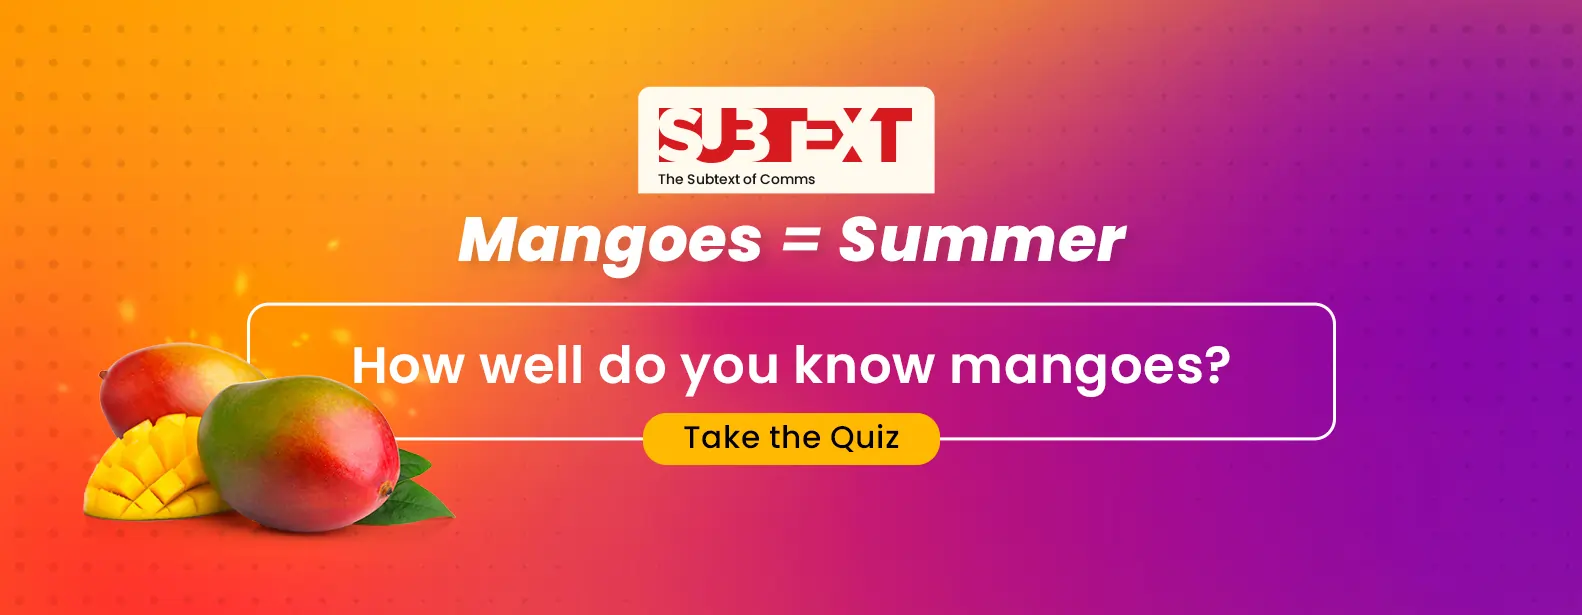 Mango subtext